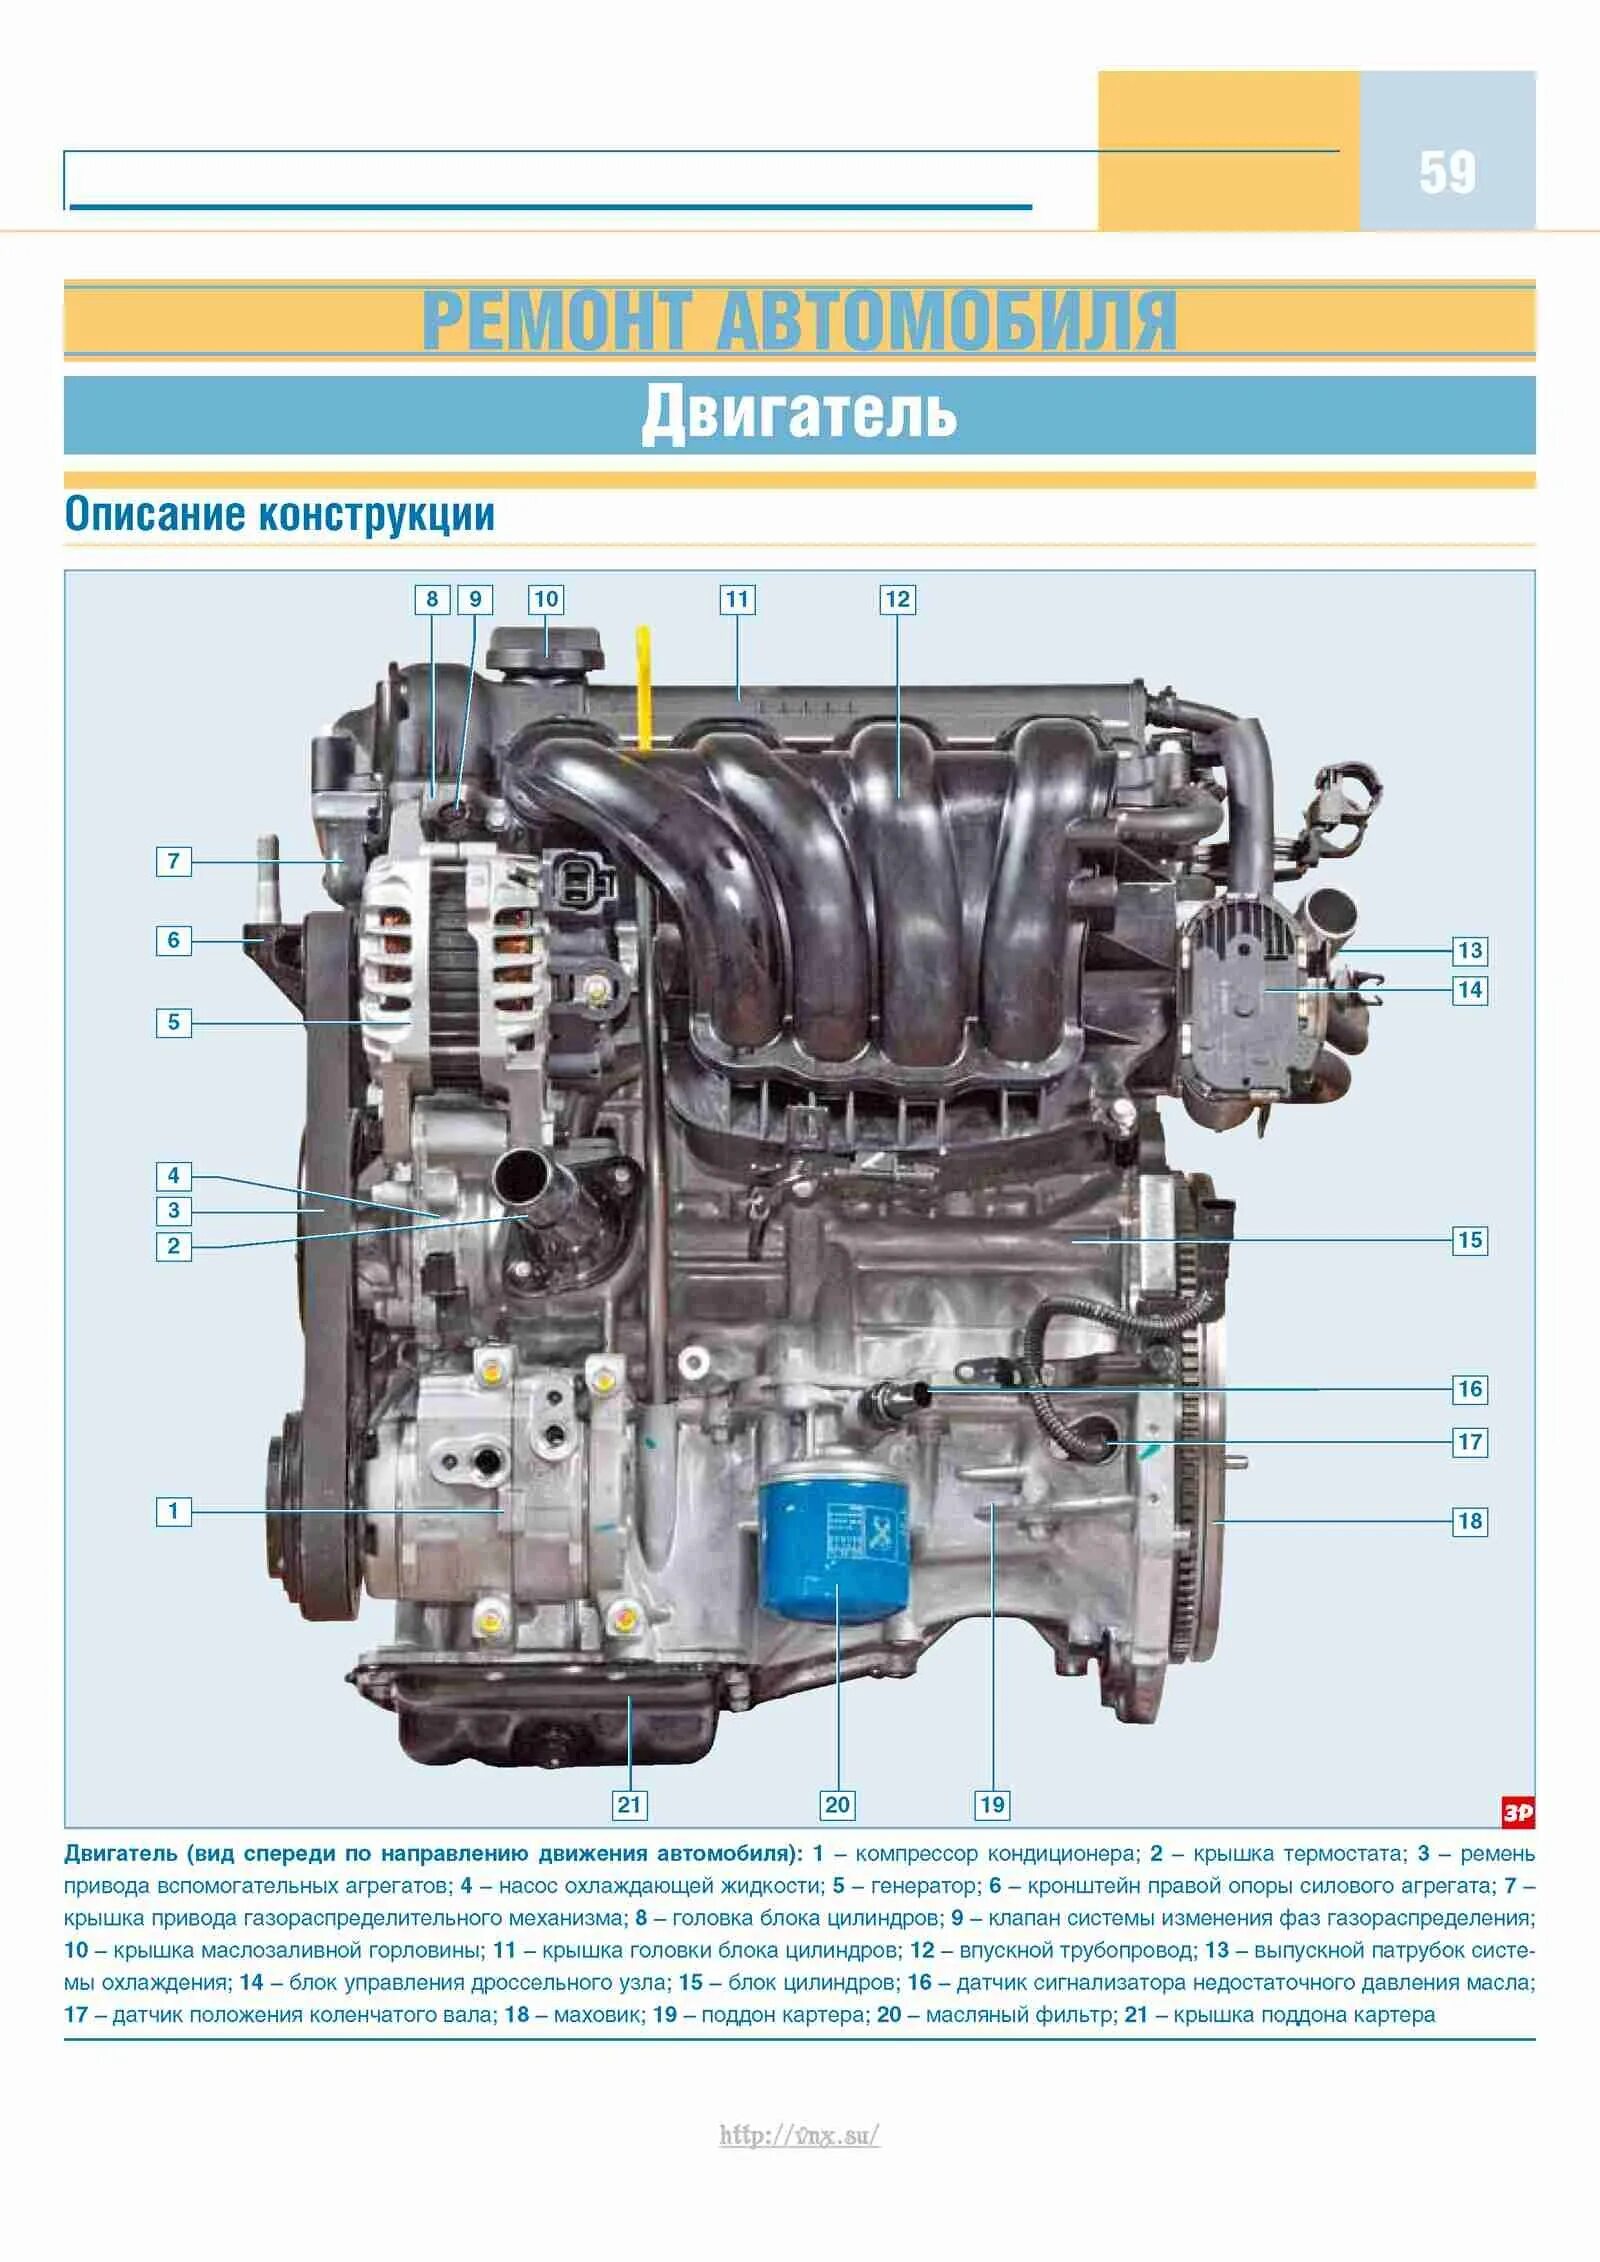 Мотор Киа Рио 3 1.6 чертеж. Двигатель Киа Рио 3 1.6. Схема двигателя g4fc 1.6. ДВС Киа 1,6 устройство.